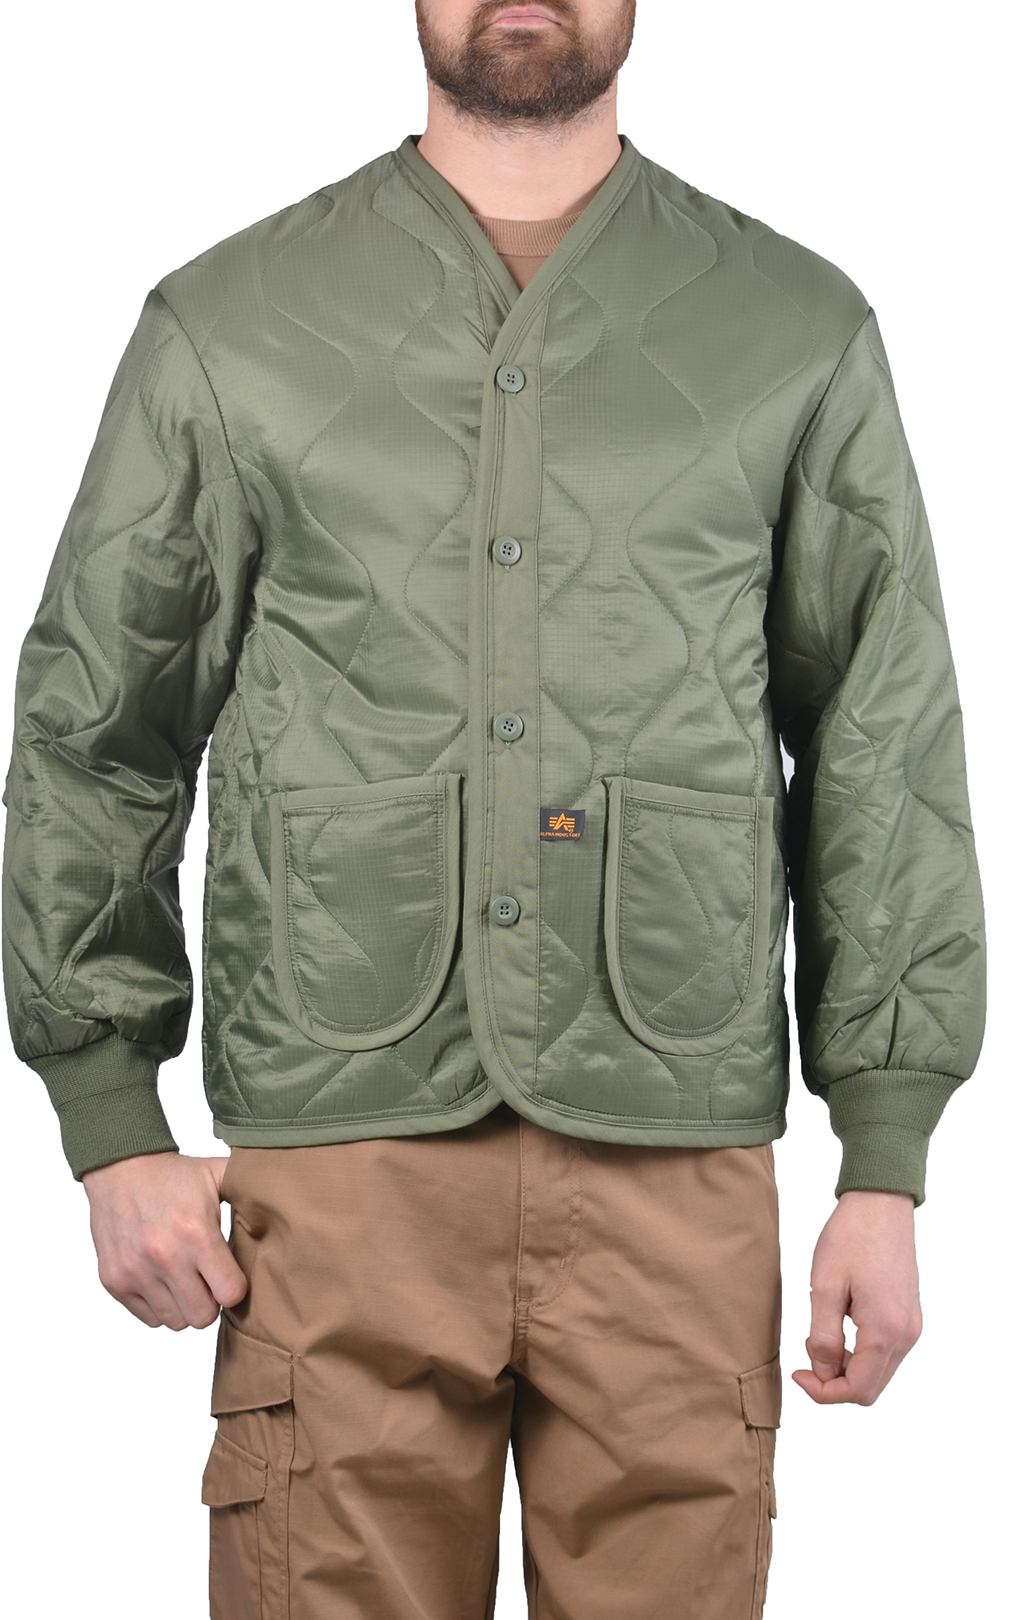 Куртка-подстёжка ALPHA INDUSTRIES CLASSIC M-65 с карманами и манжетами olive 